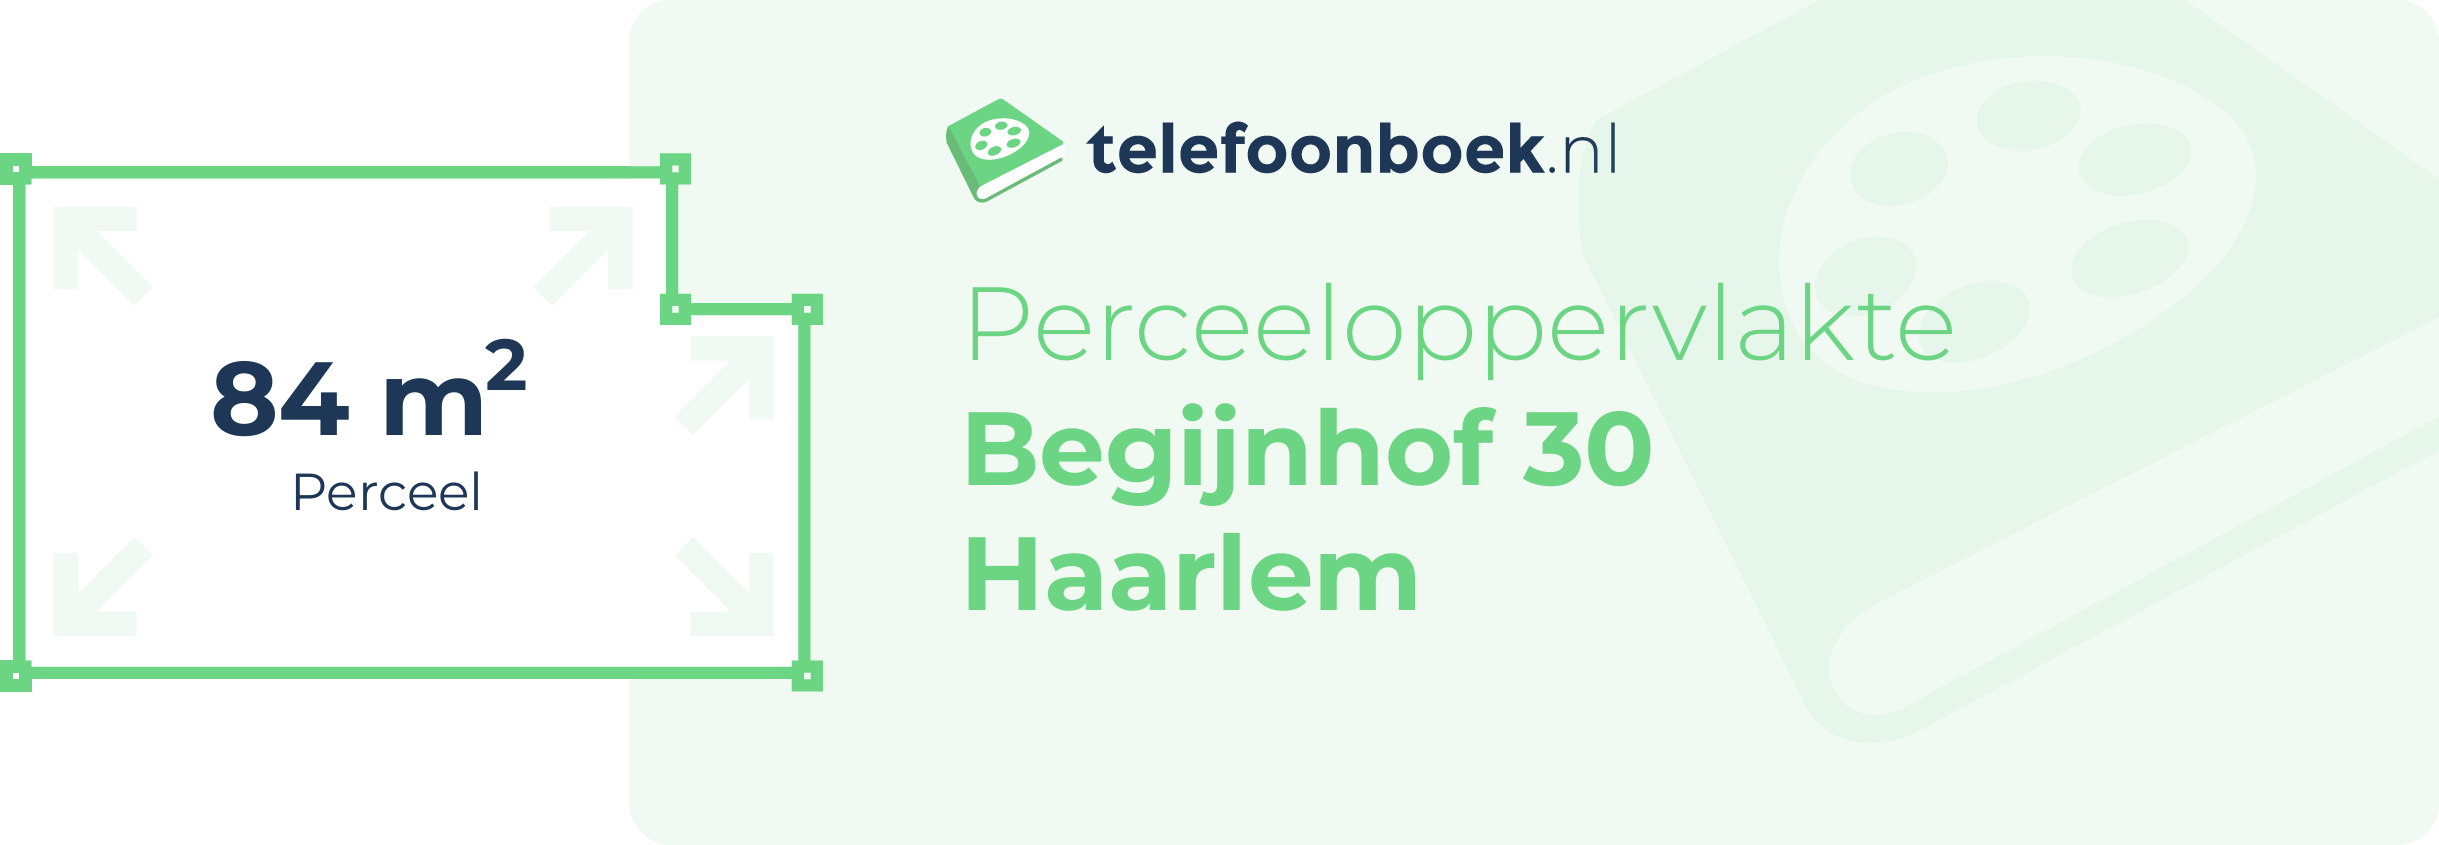 Perceeloppervlakte Begijnhof 30 Haarlem